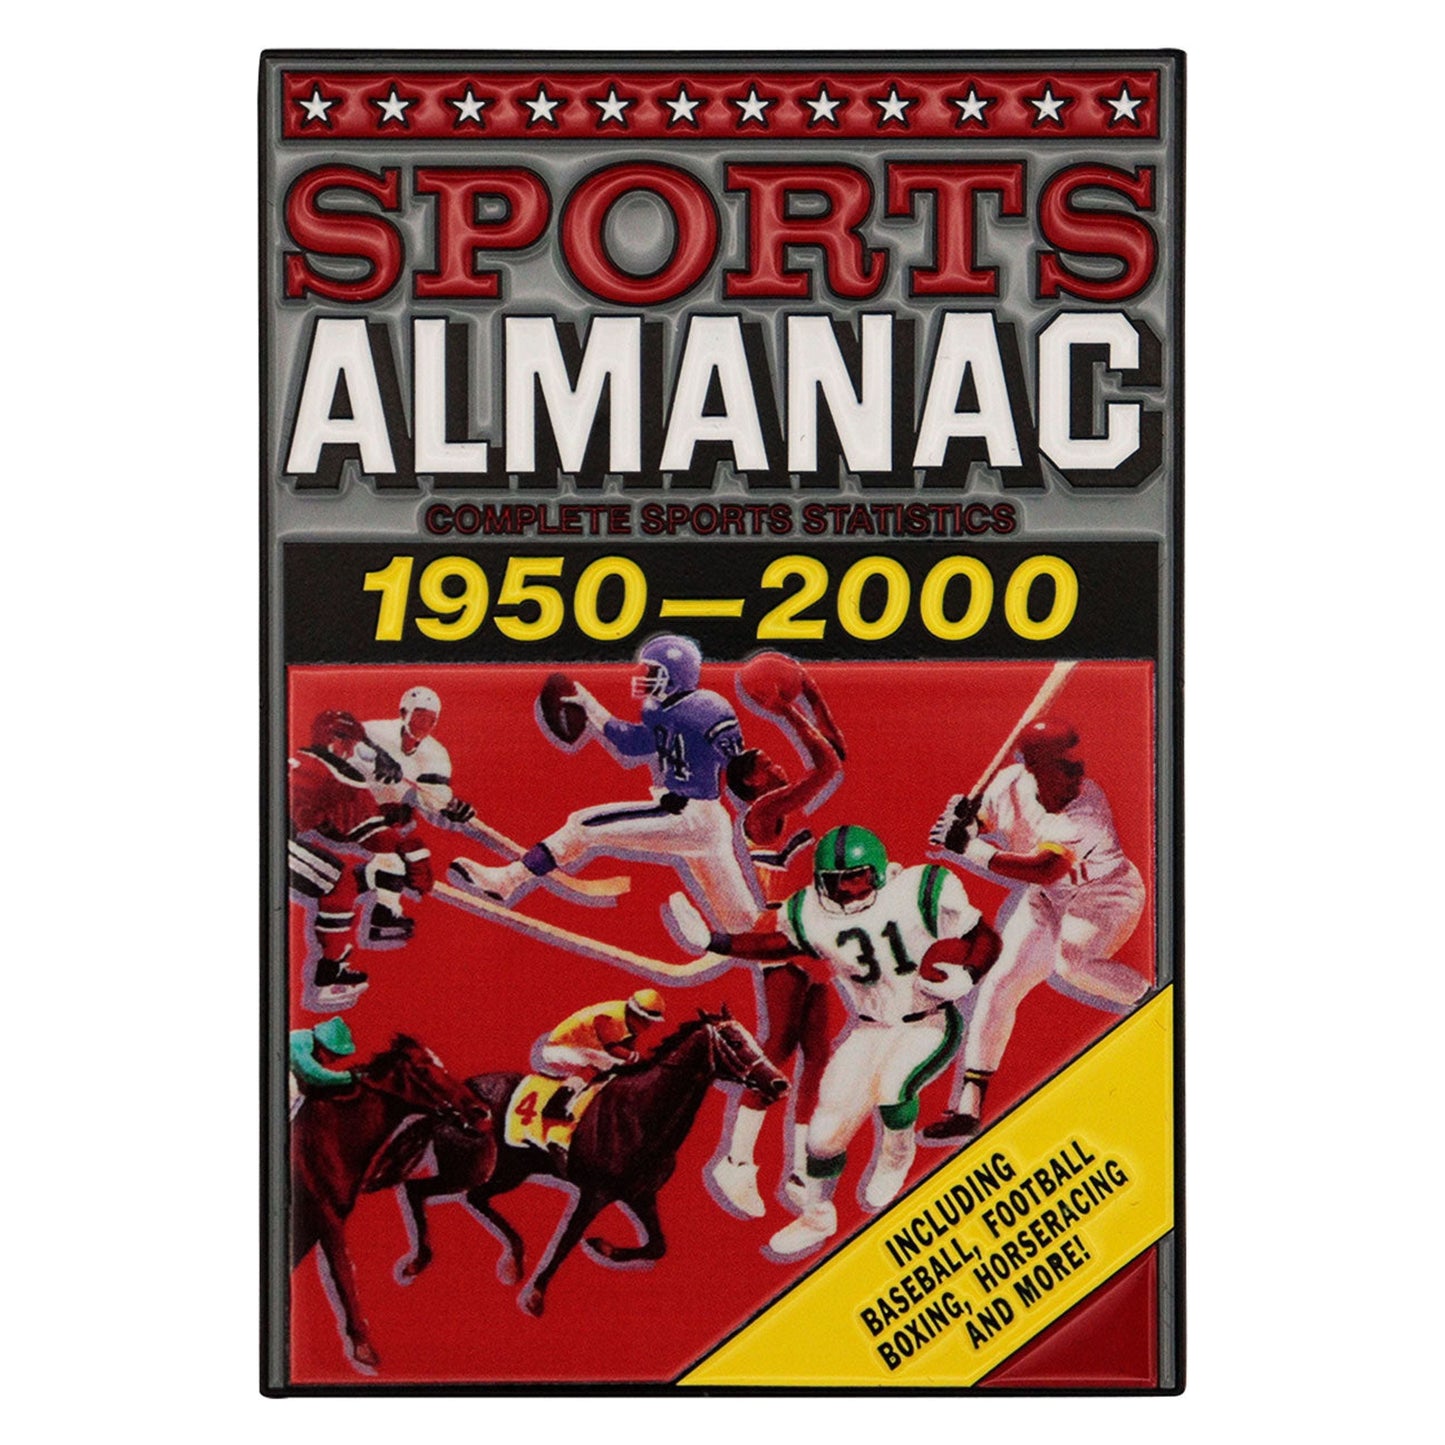 Zurück in die Zukunft Teil II Limited Edition Sports Almanac Ingot